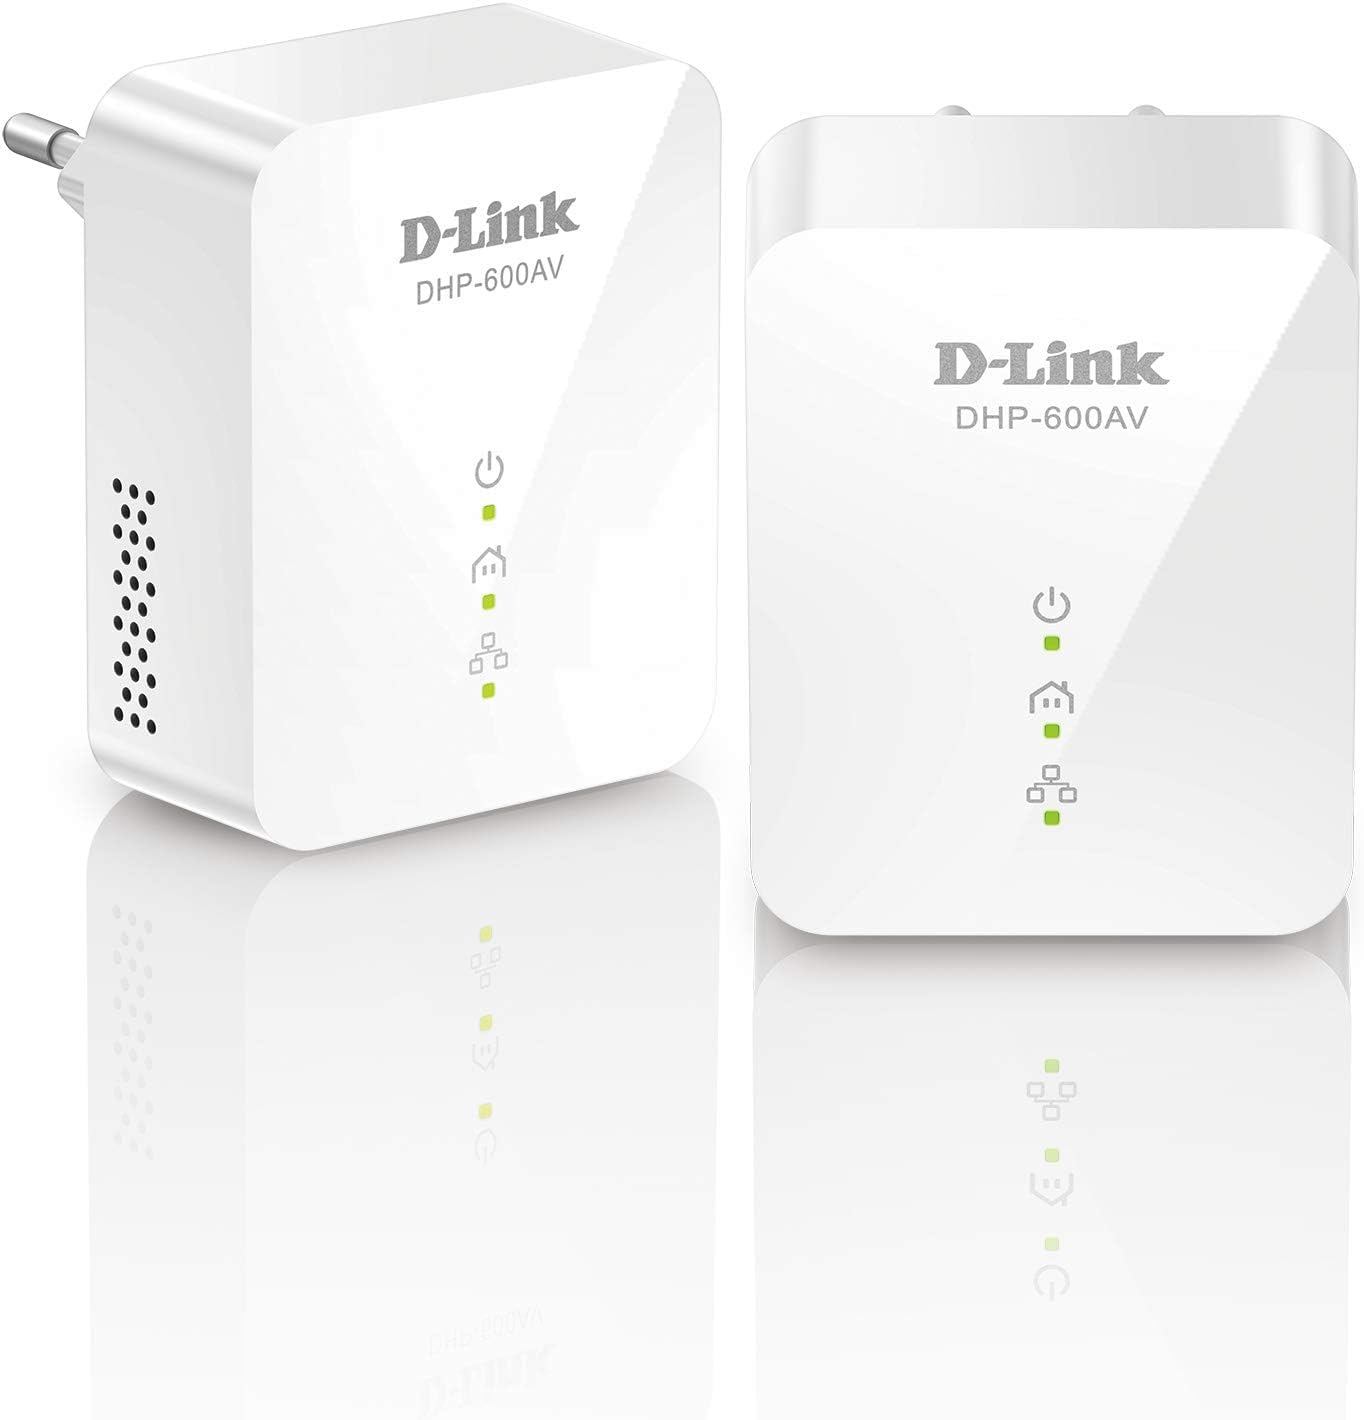 D-Link DHP-601AV (2x DHP-600AV) Powerline Gigabit Starter Kit (Netzwerkverbindung für kabelgebundene Geräte, bis zu 1000 Mbit/s, AV2-Technik, Plug-and-Play)